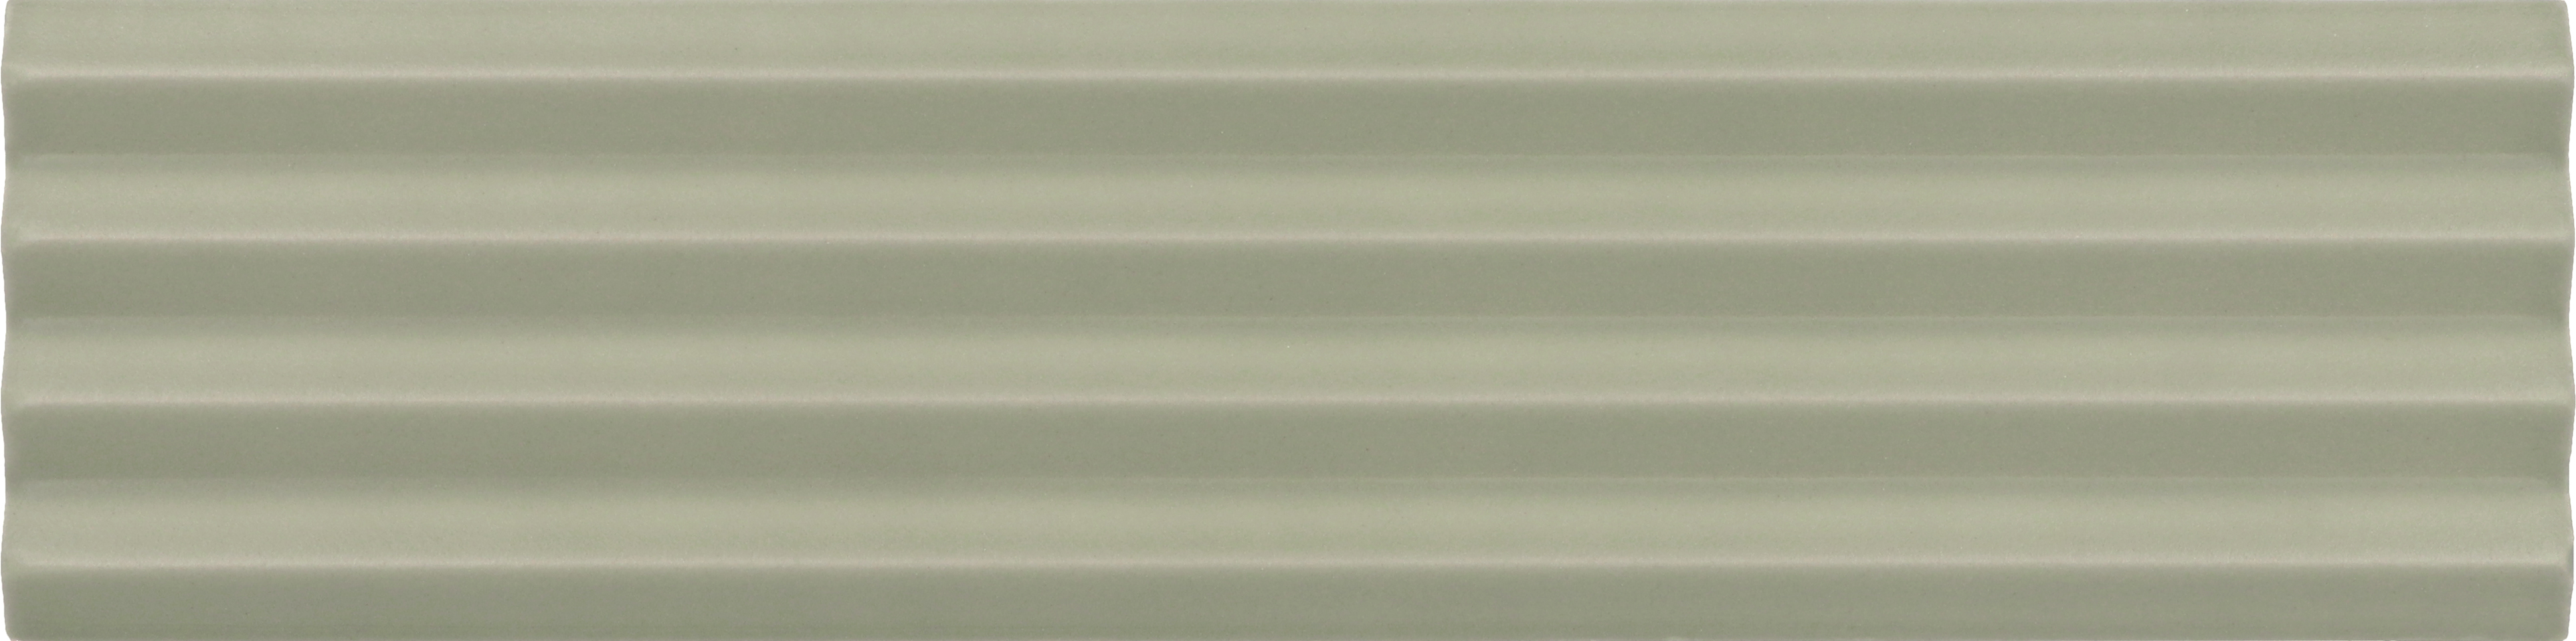 Carrelage uni vert clair avec texture cannelée sans motifs pour design intérieur moderne et épuré